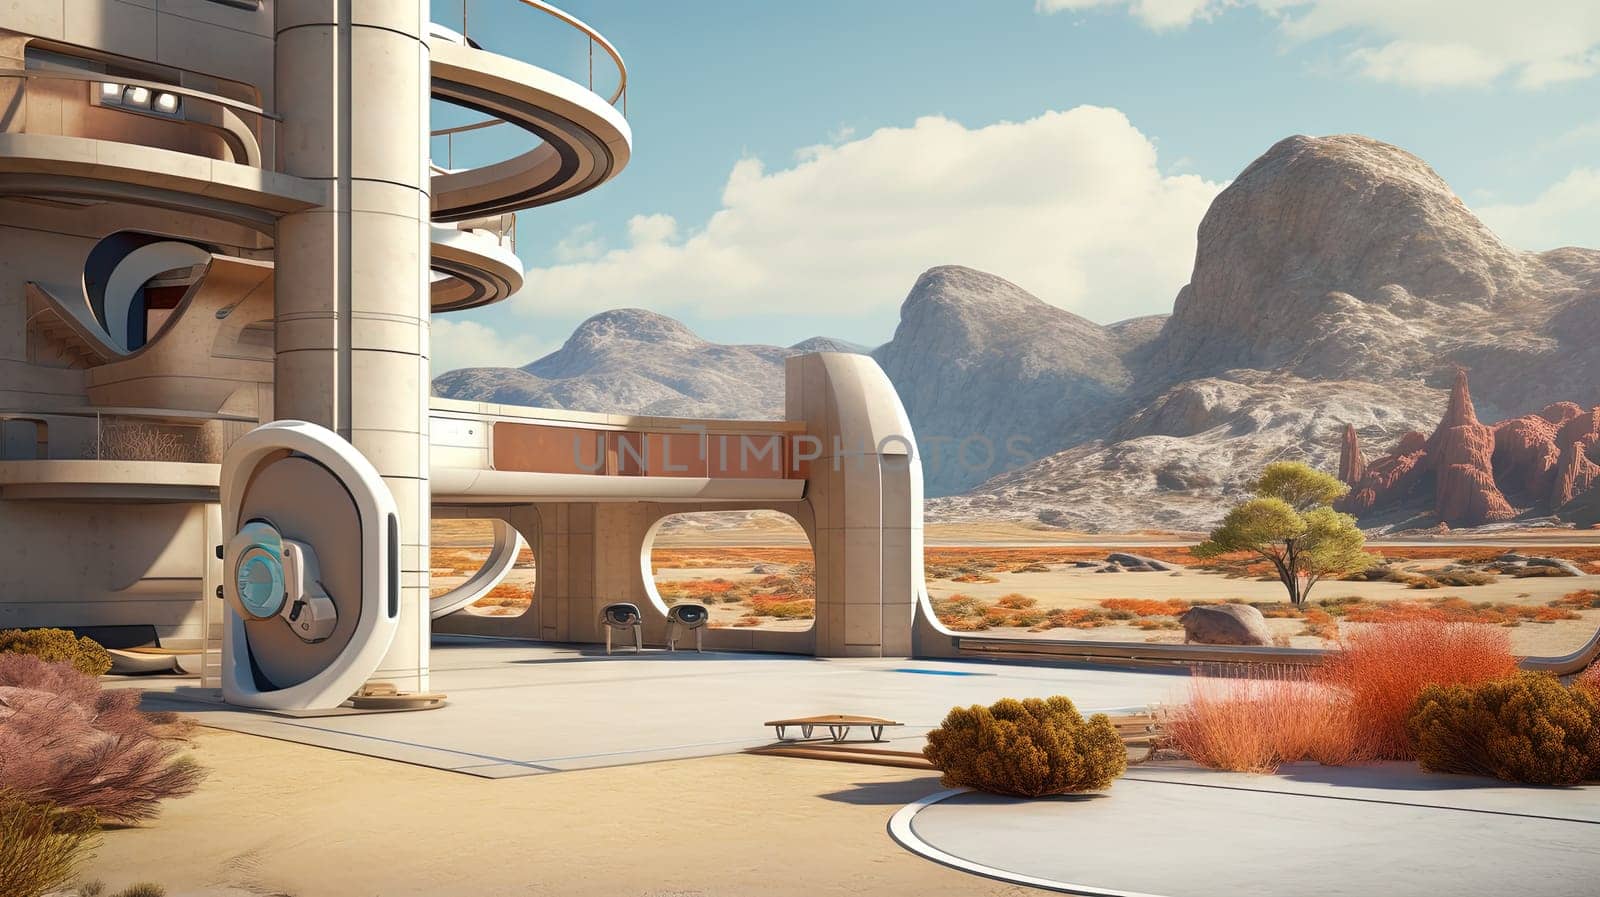 Retro futuristic architecture in sci-fi scene on the desert planet. Alien landscape with nostalgic retro future constructions. Generated AI. by SwillKch